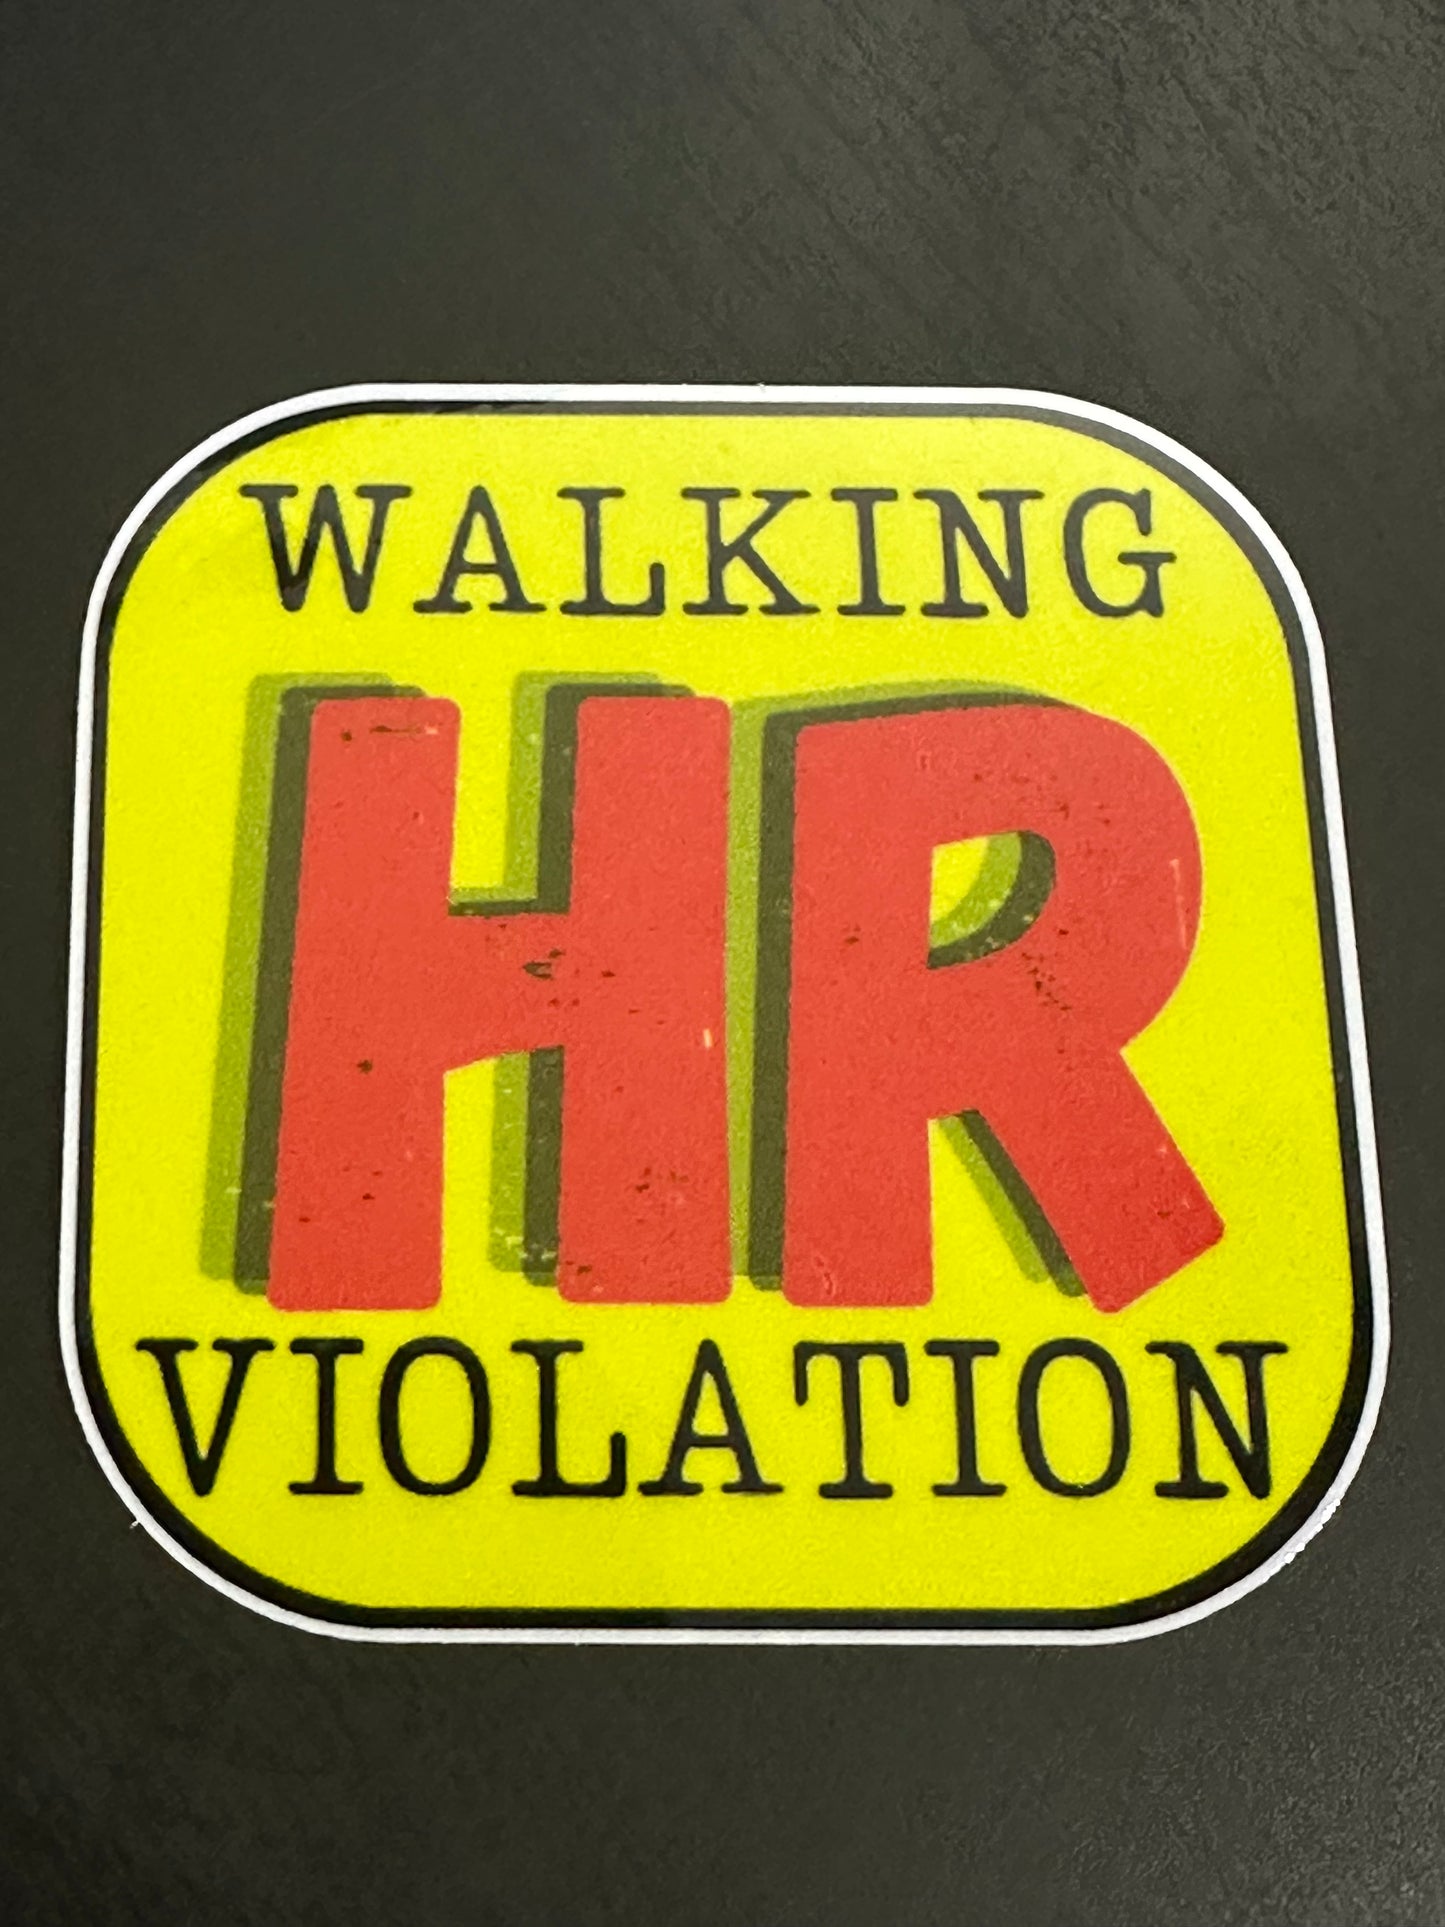 Walking HR Violation Yellow 2.98"2.98" inch Vinyl Sticker #38